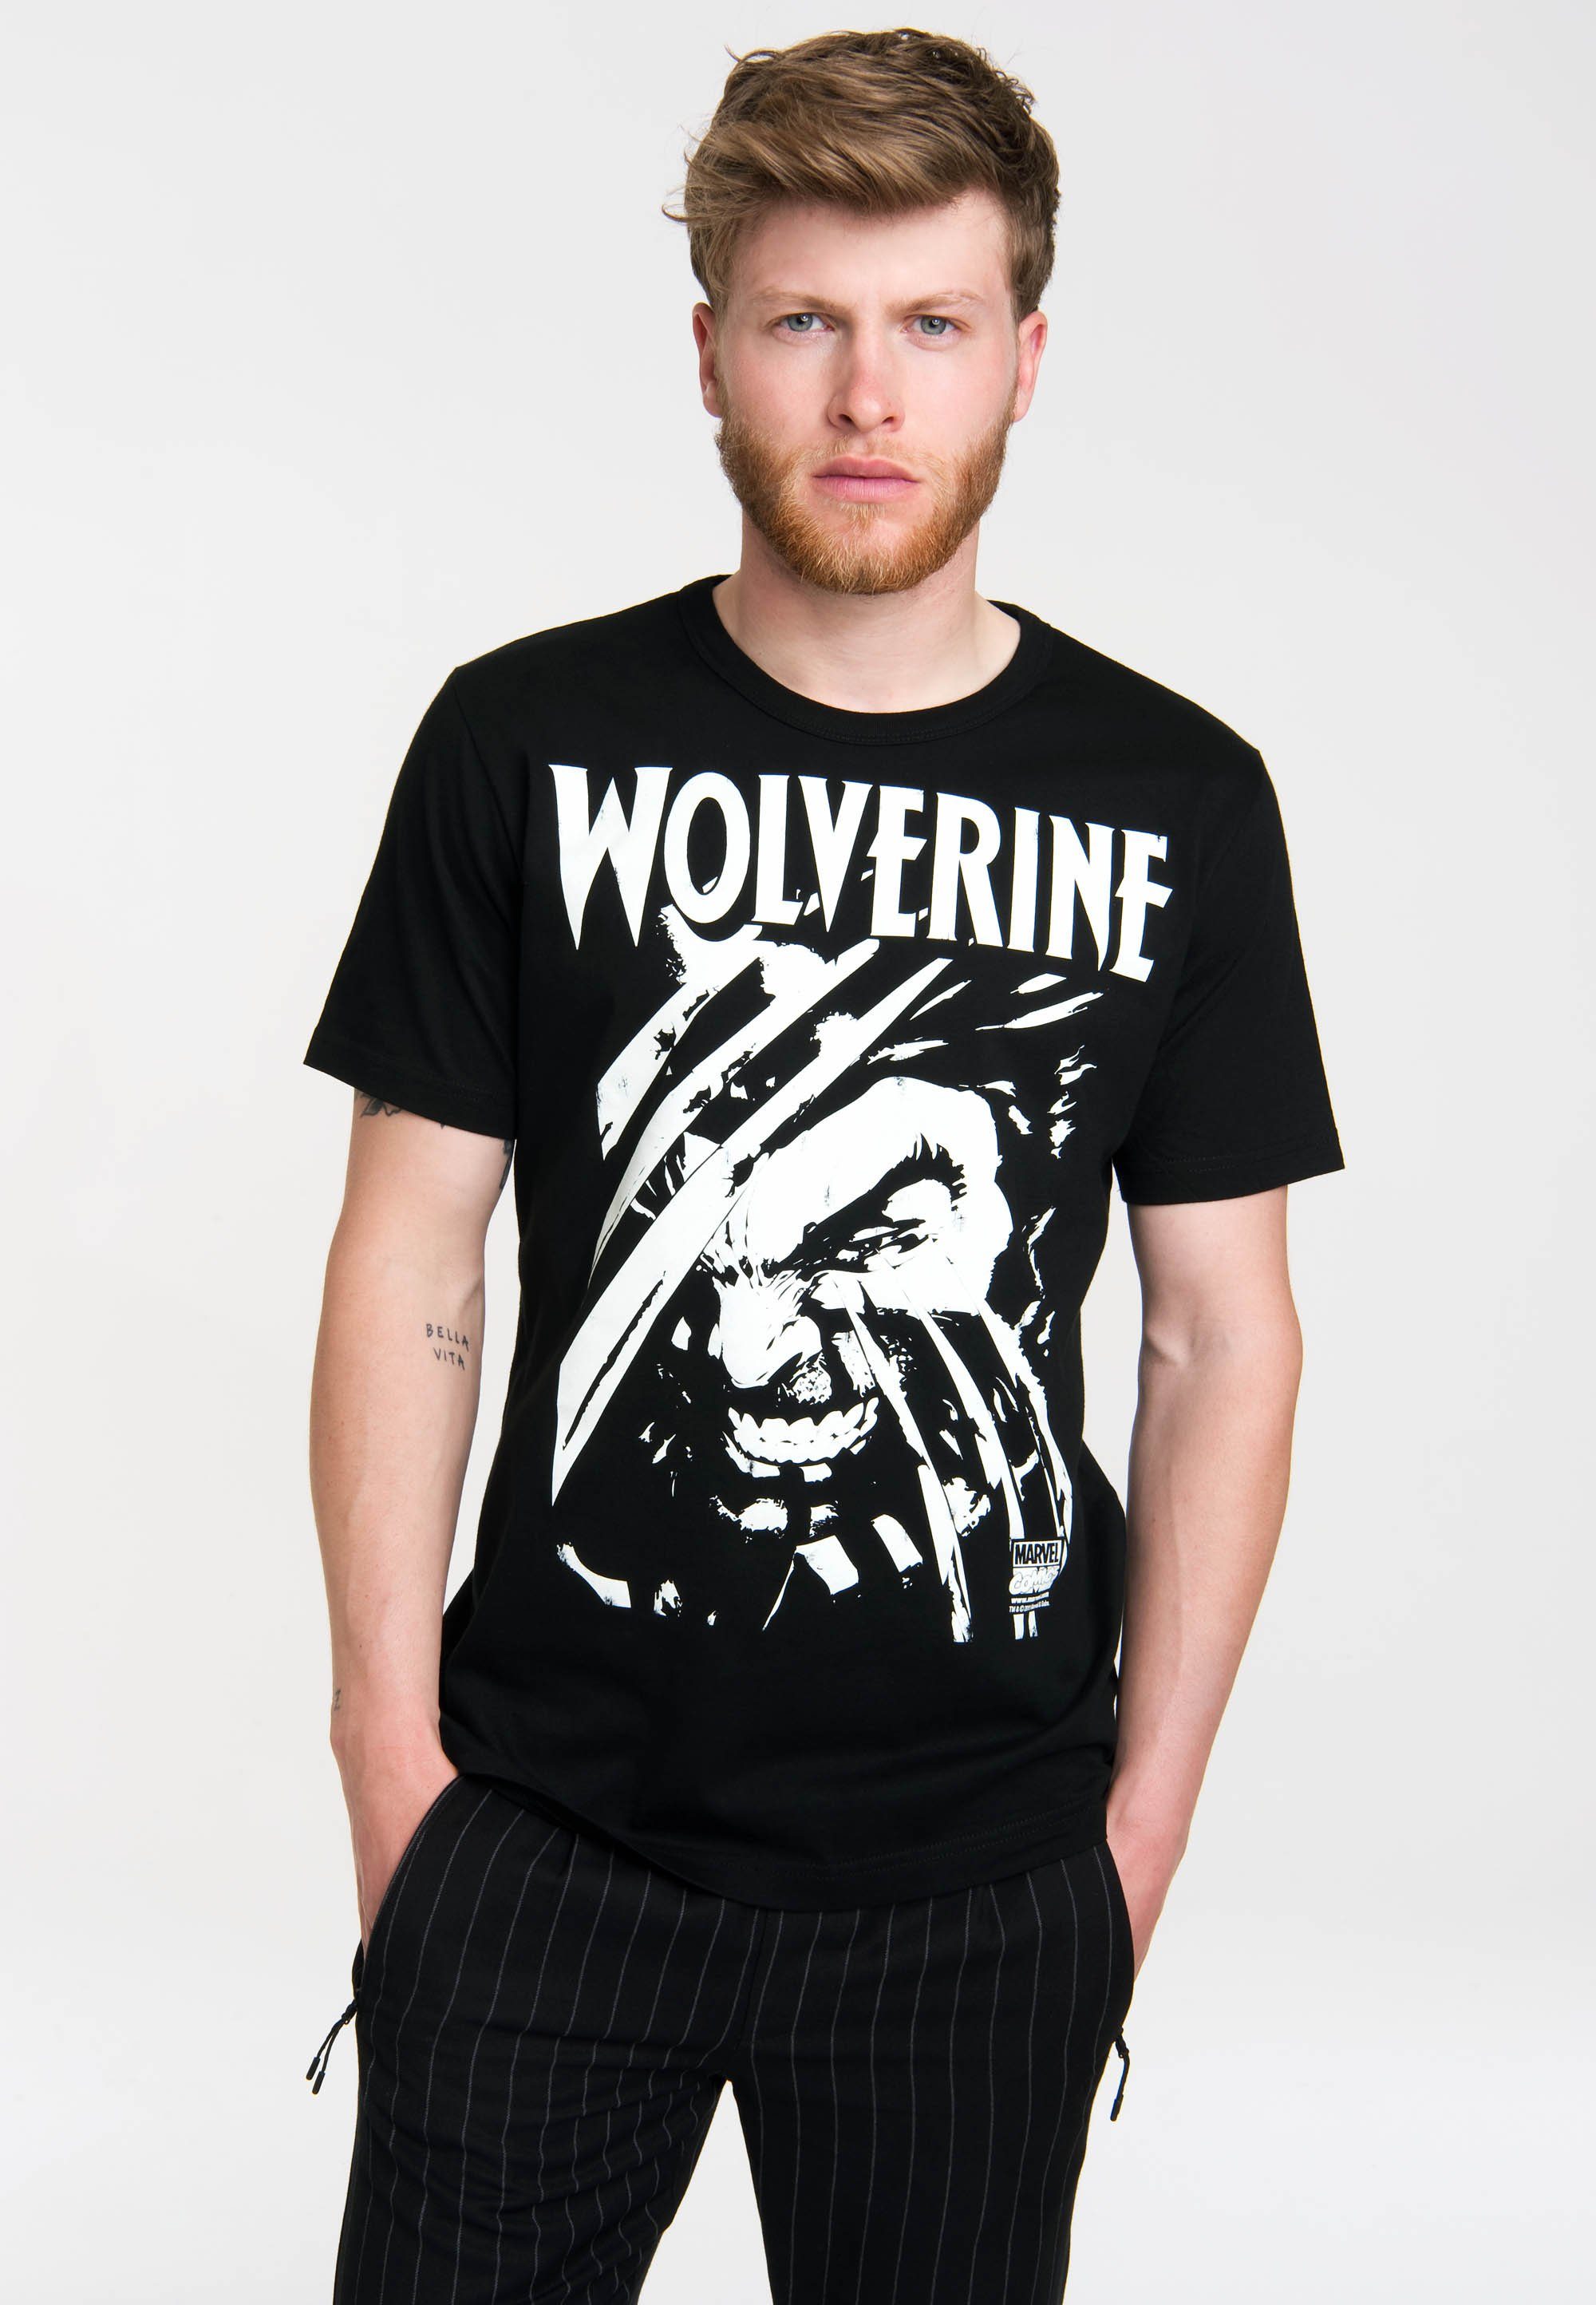 LOGOSHIRT T-Shirt Wolverine Frontprint coolem mit